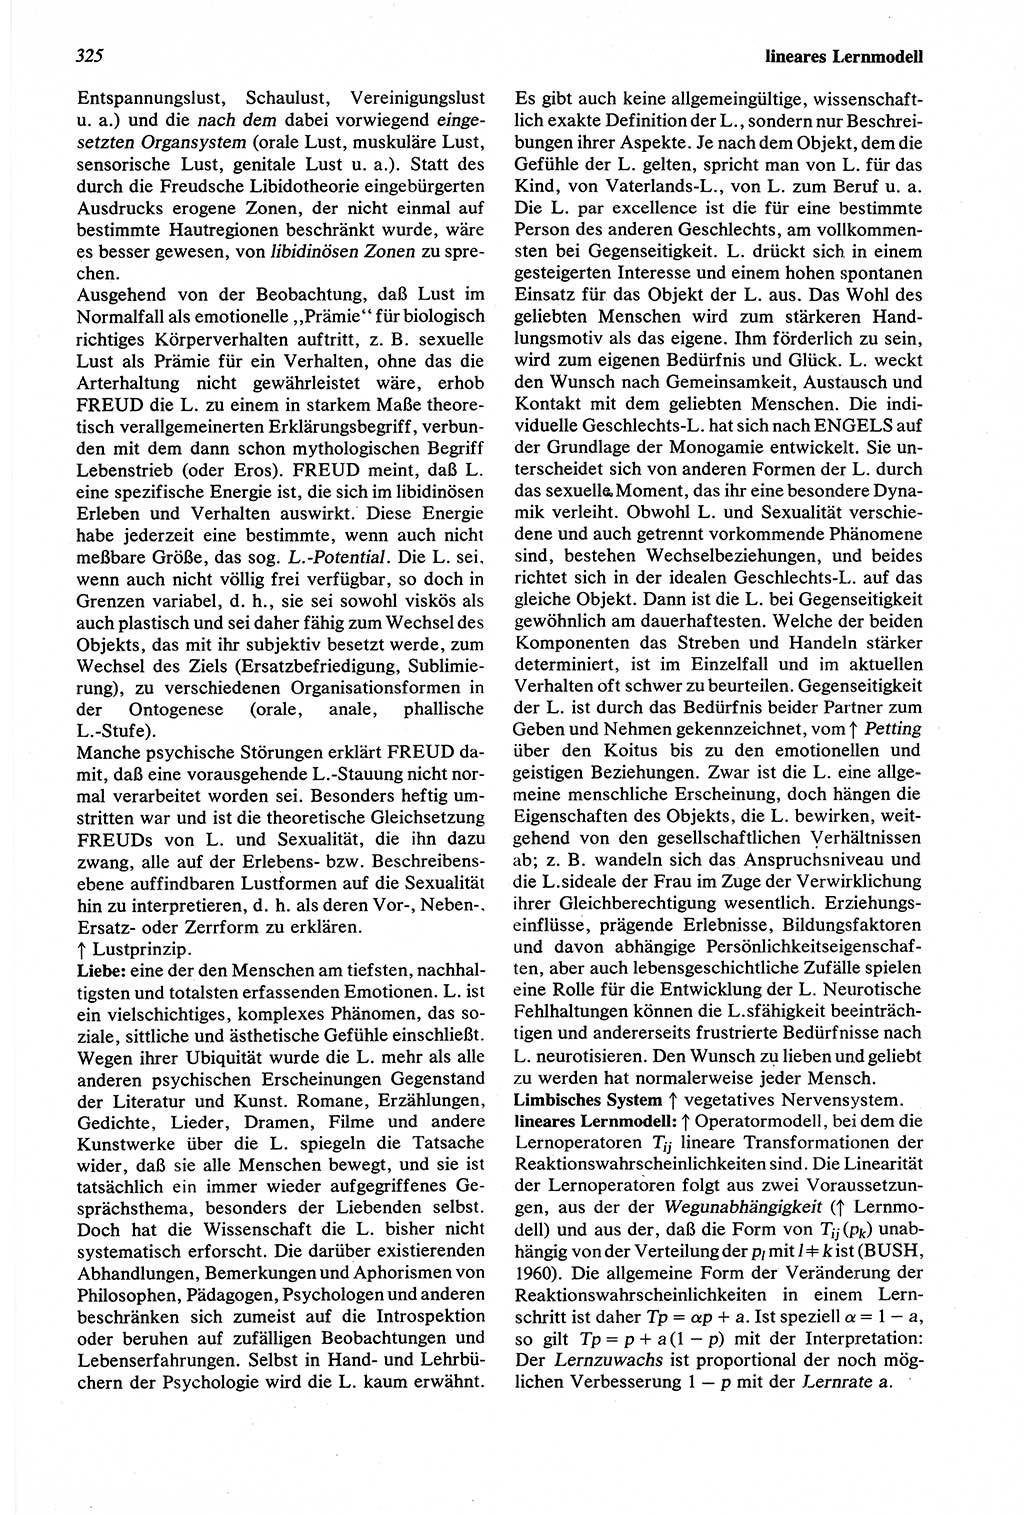 Wörterbuch der Psychologie [Deutsche Demokratische Republik (DDR)] 1976, Seite 325 (Wb. Psych. DDR 1976, S. 325)